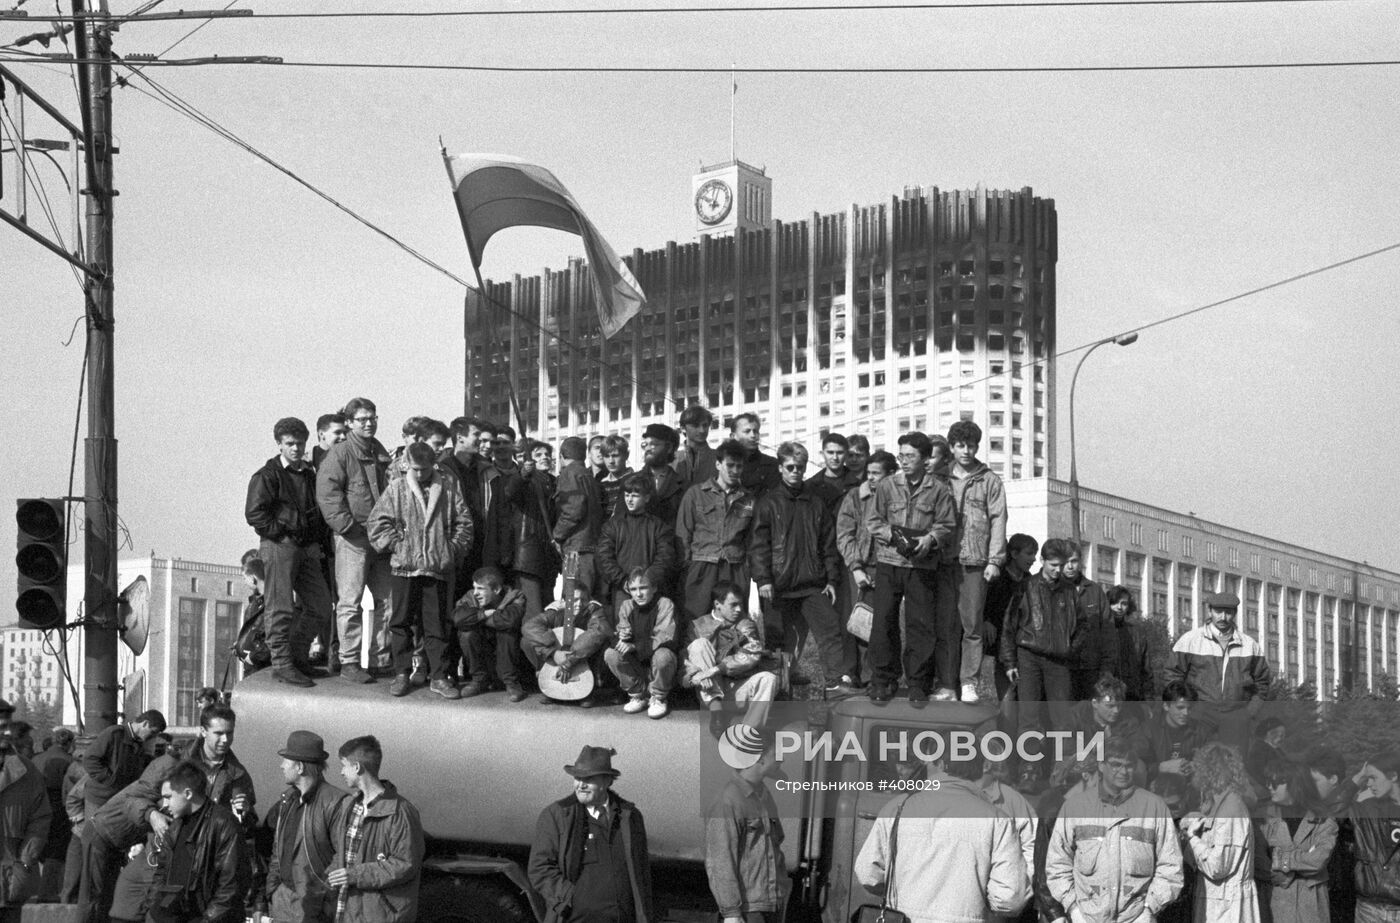 Фотография на фоне Дома Советов в Москве